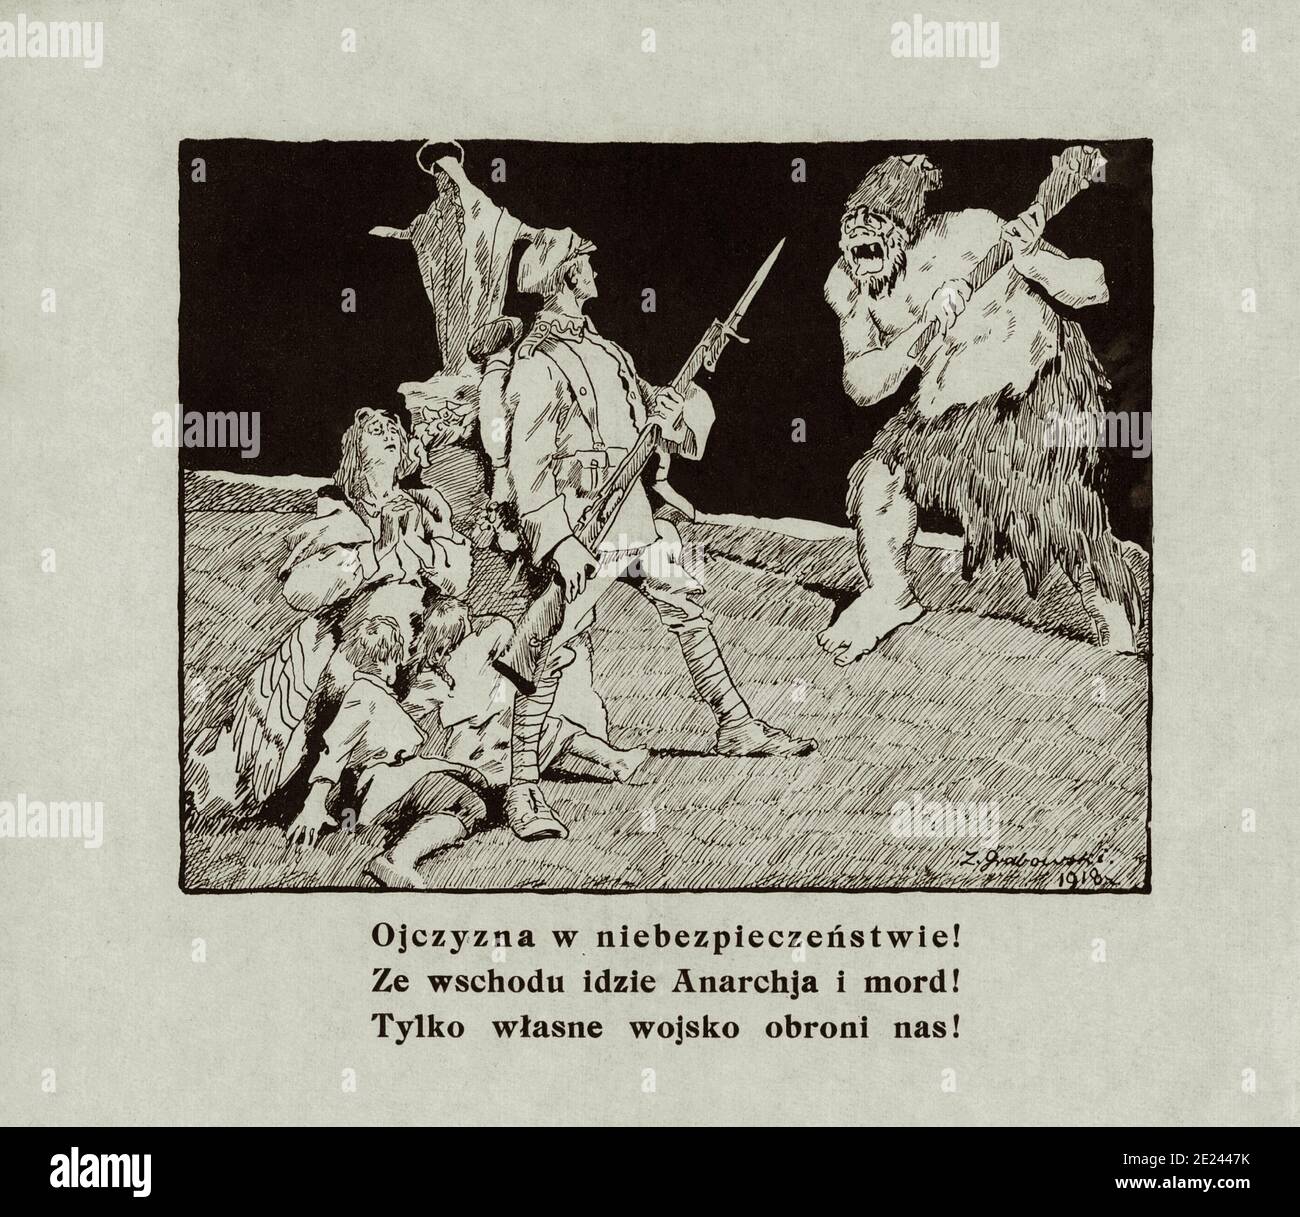 Póster de propaganda polaco anti-bolshivik. ¡la Patria está en peligro! ¡del este viene la anarquía y el asesinato! 1920 Foto de stock